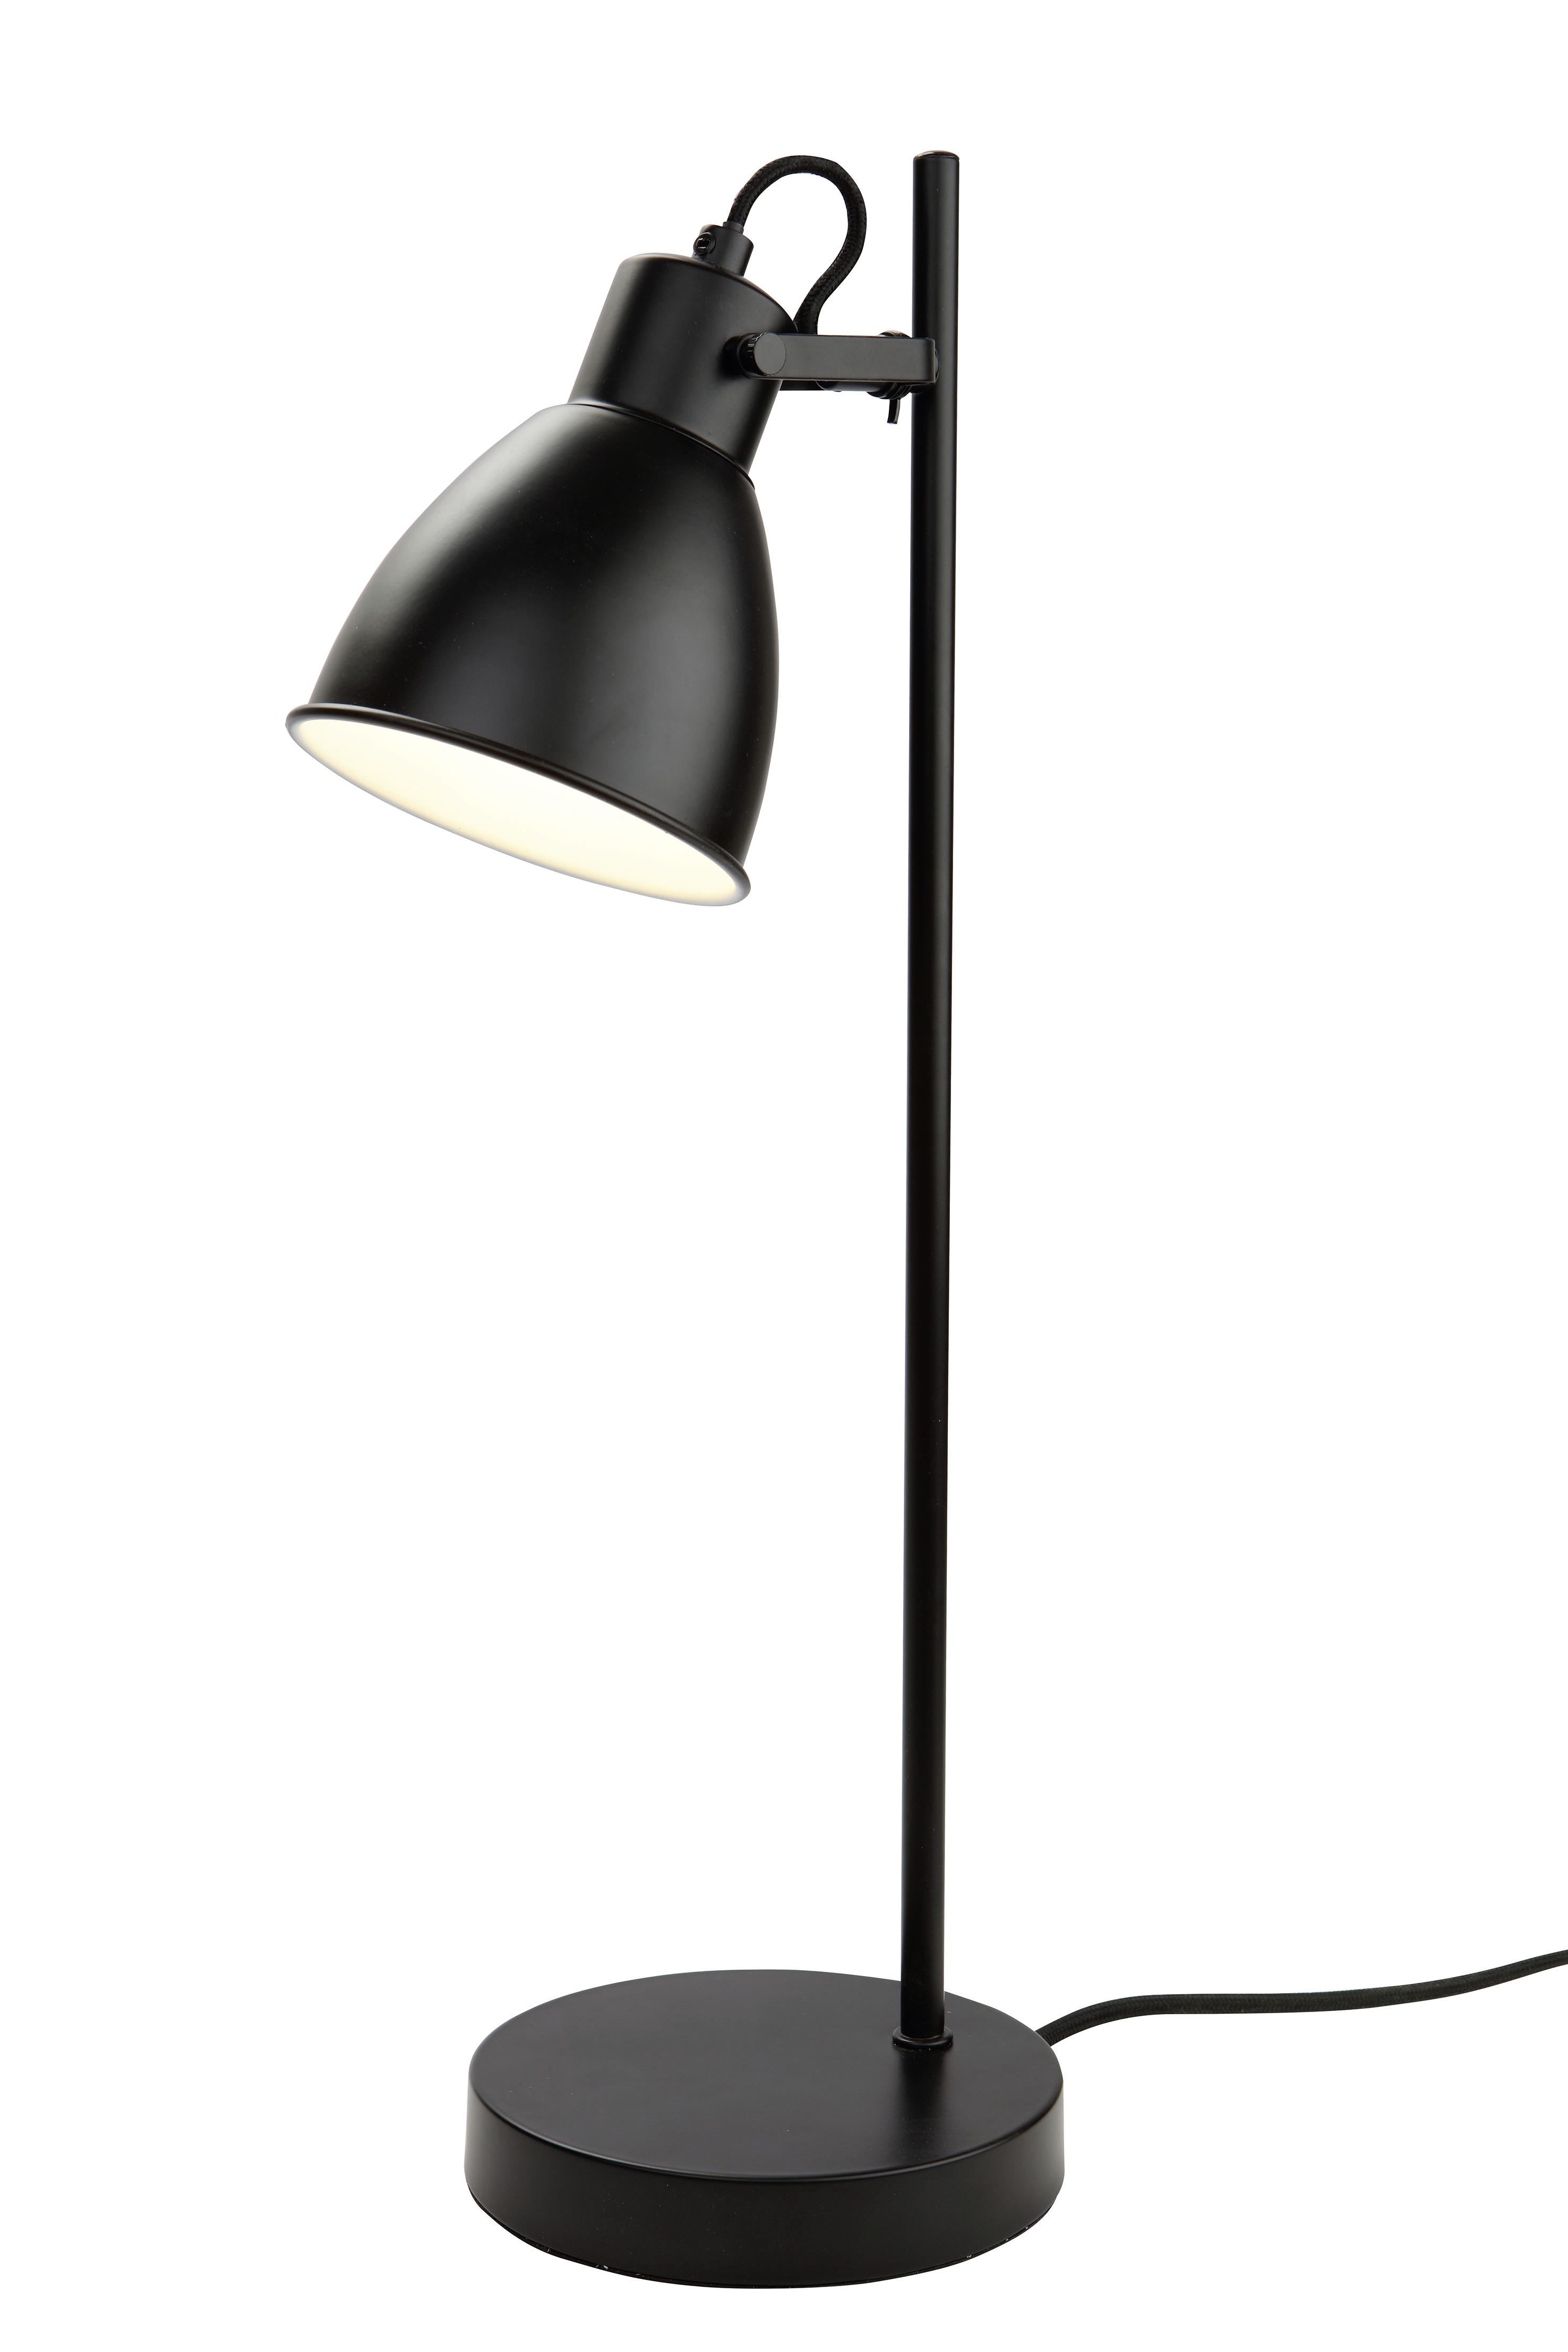 STOLOVÁ LAMPA, E27, 24,7/50,5 cm  - čierna, Lifestyle, kov (24,7/50,5cm) - Marama